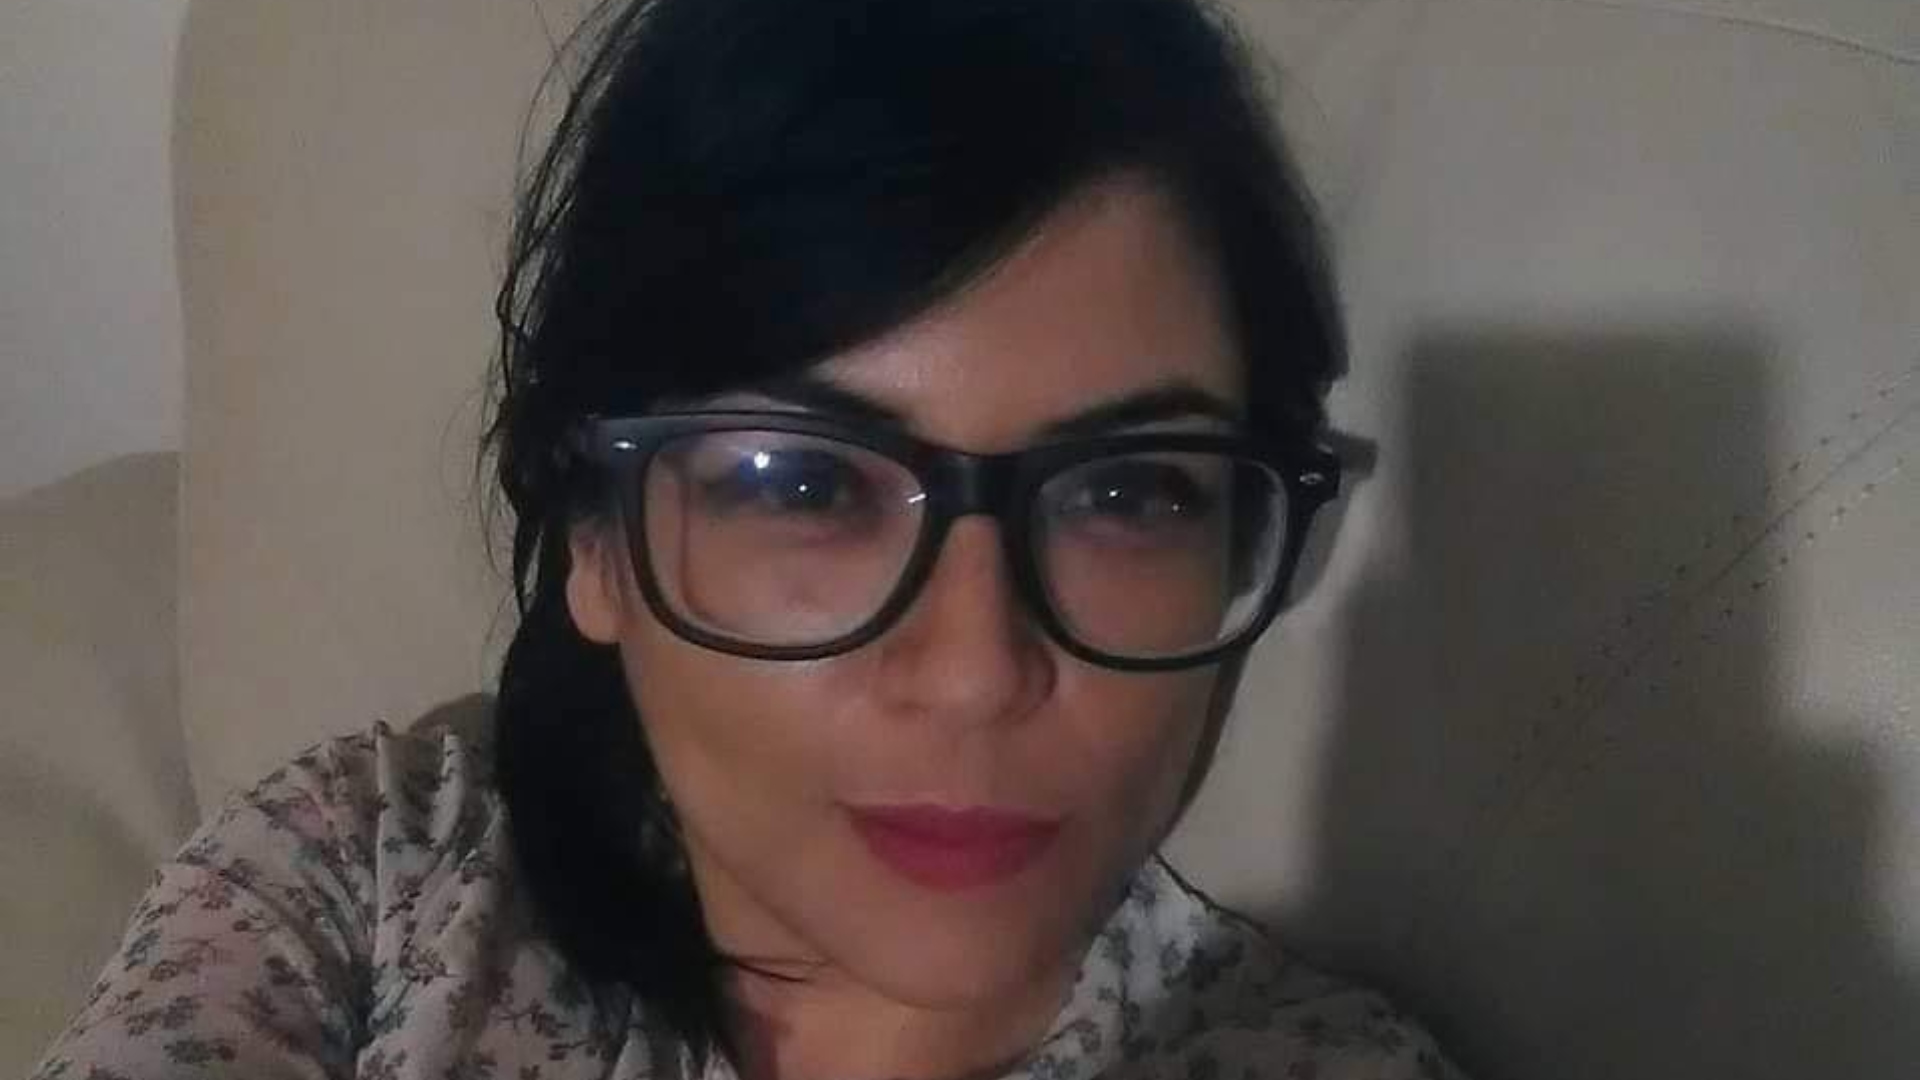 La activista y defensora de derechos humanos fue encontrada muerta el mismo día de su desaparición (Twitter/@izqverdemx)